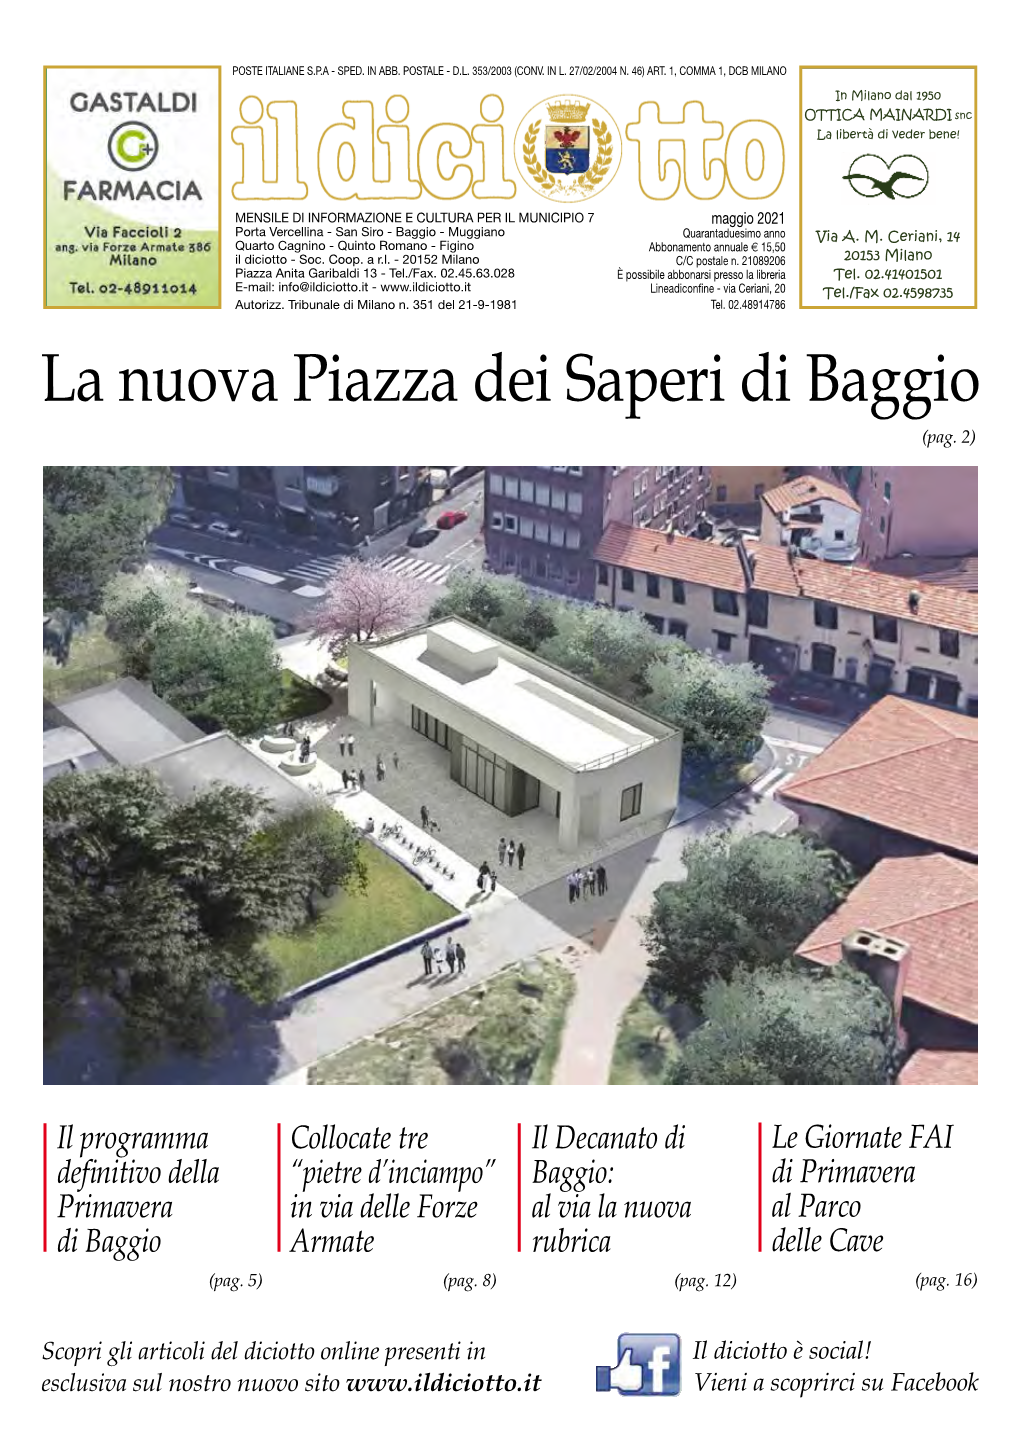 La Nuova Piazza Dei Saperi Di Baggio Venerdì Venerdì 17 17 Ottobre Ottobre (Pag